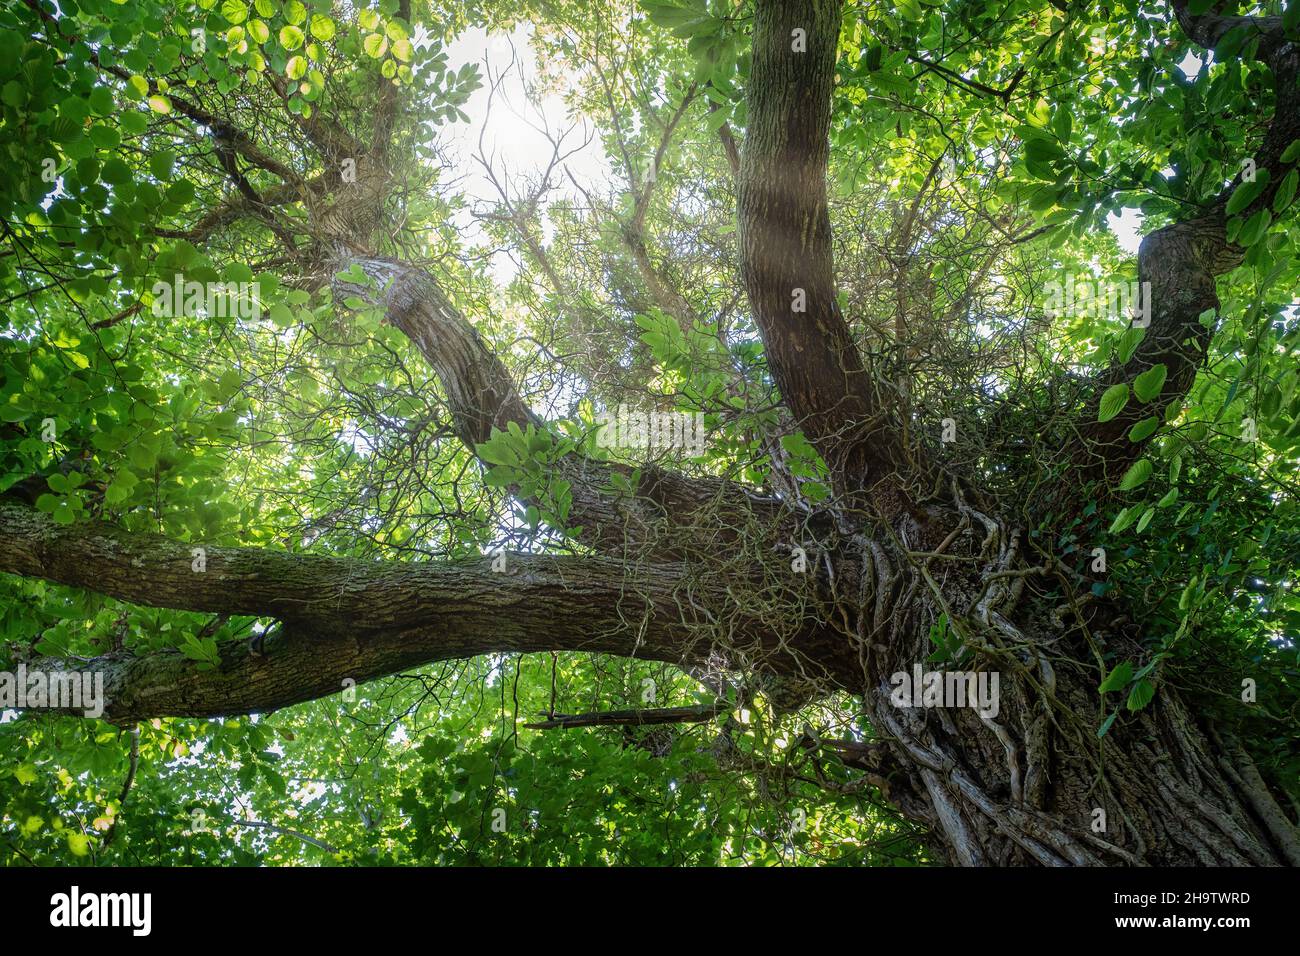 un baldacchino centenario visto dal basso, con il tronco in primo piano e i raggi del sole filtrano attraverso i rami e le foglie verdi, orizzonte Foto Stock